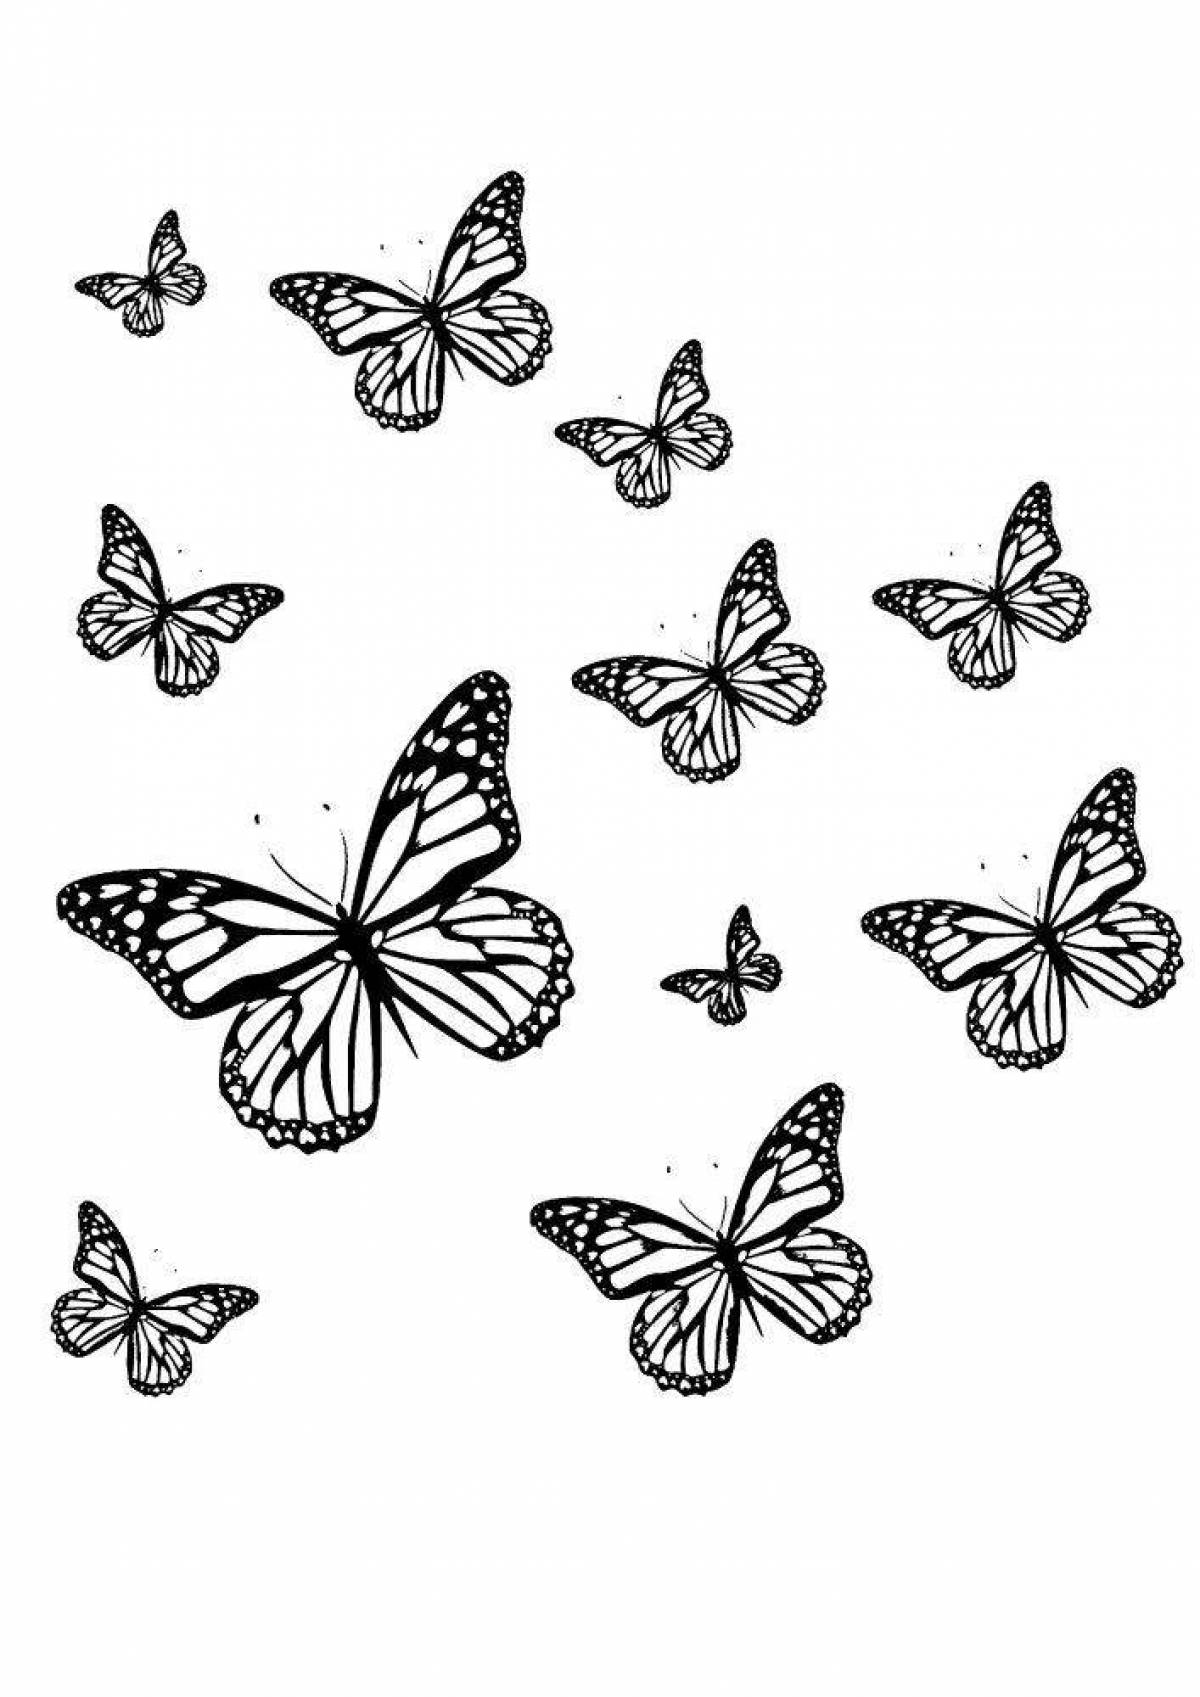 Различные виды бабочек в картинках и раскрасках для детей